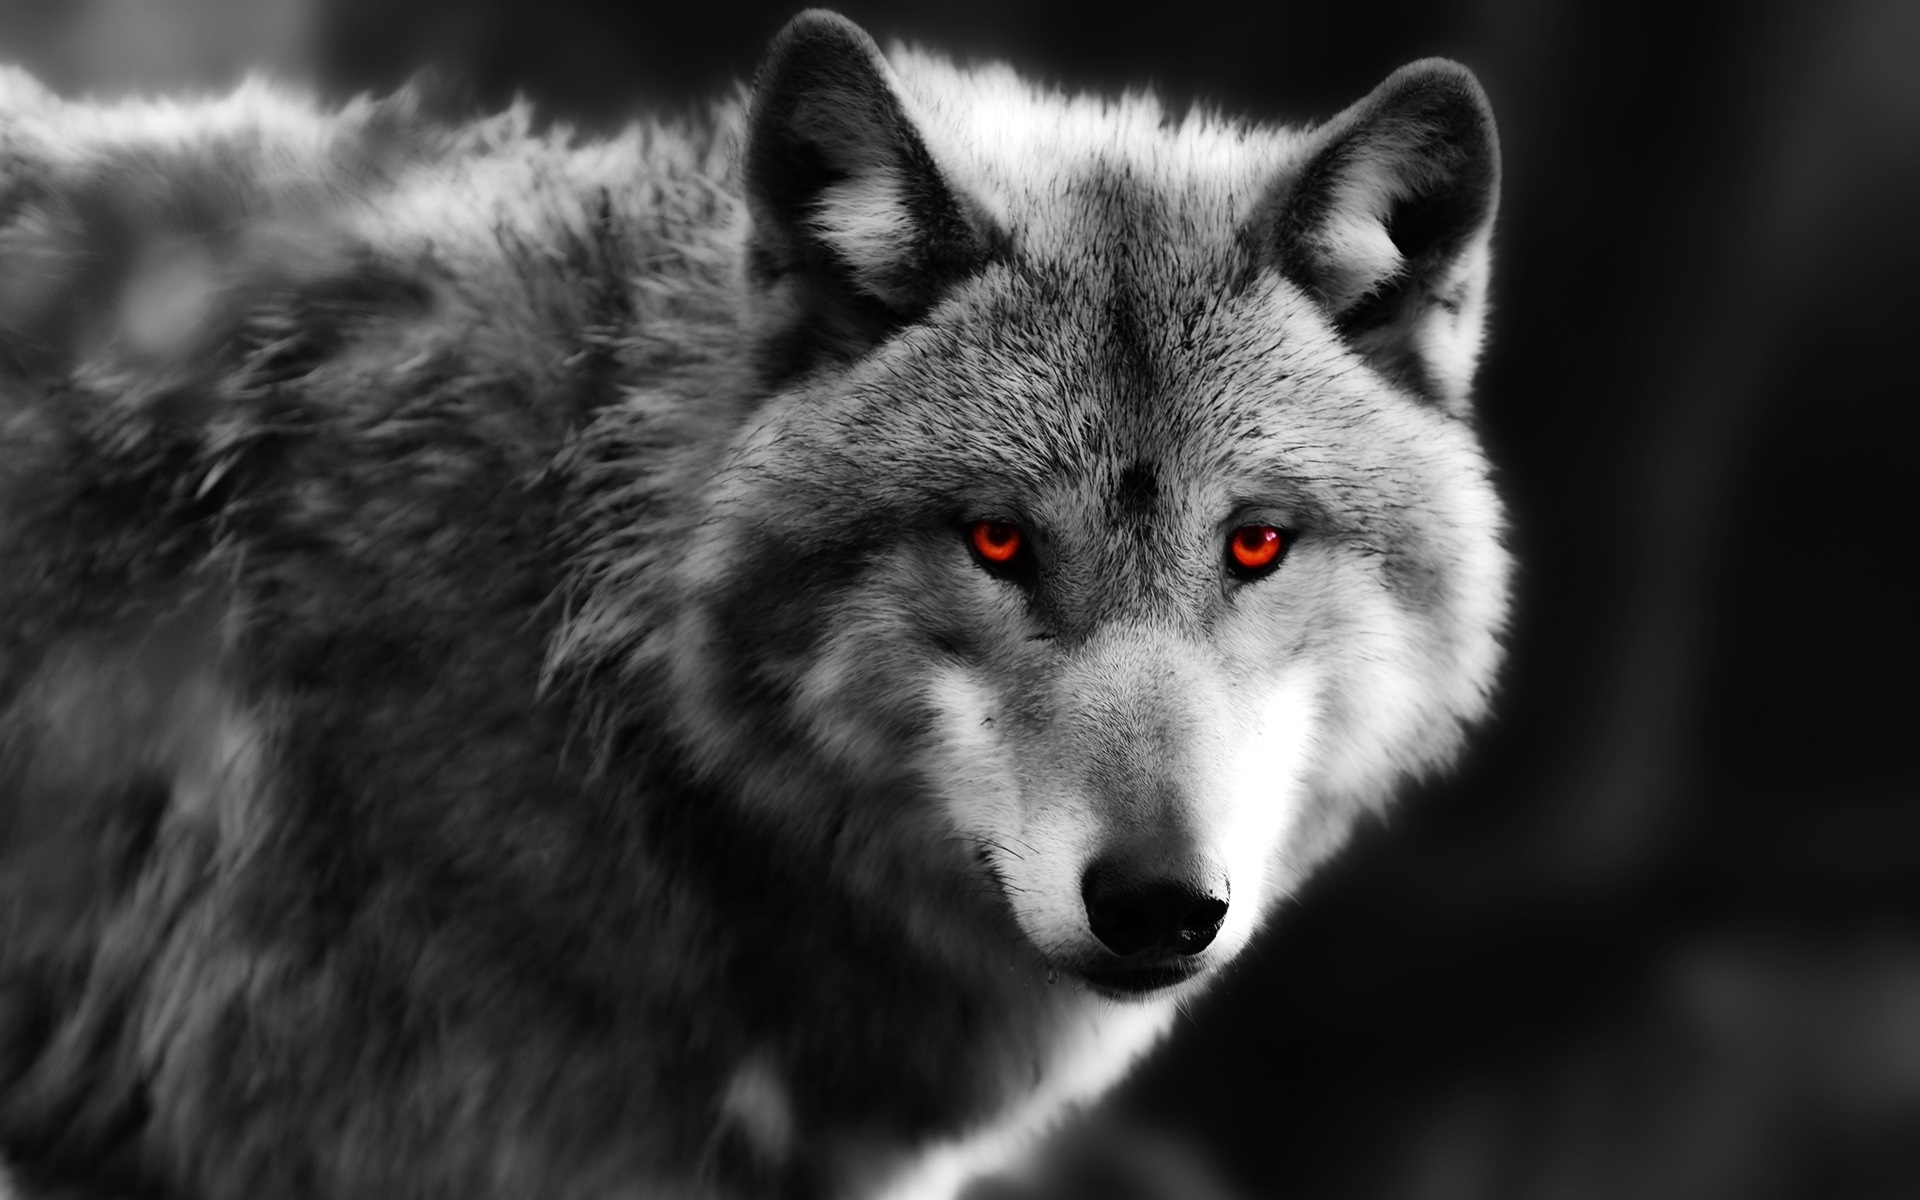 狼特写镜头,红色的眼睛,捕食者壁纸